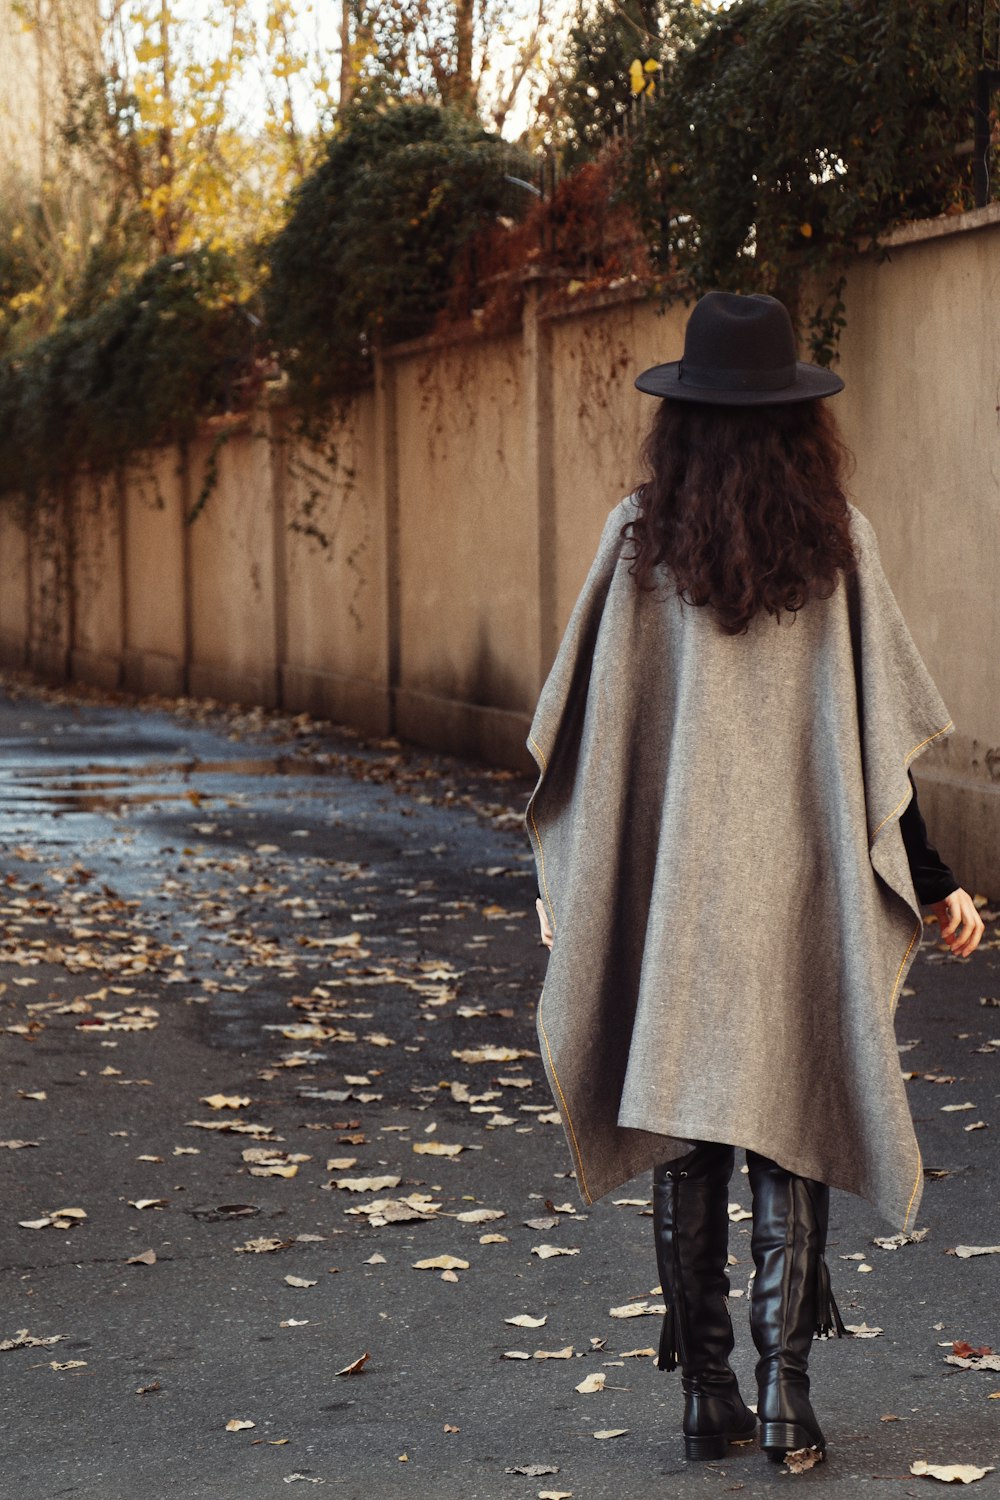 Femme au chapeau noir et manteau gris marchant dans la rue pendant la journée